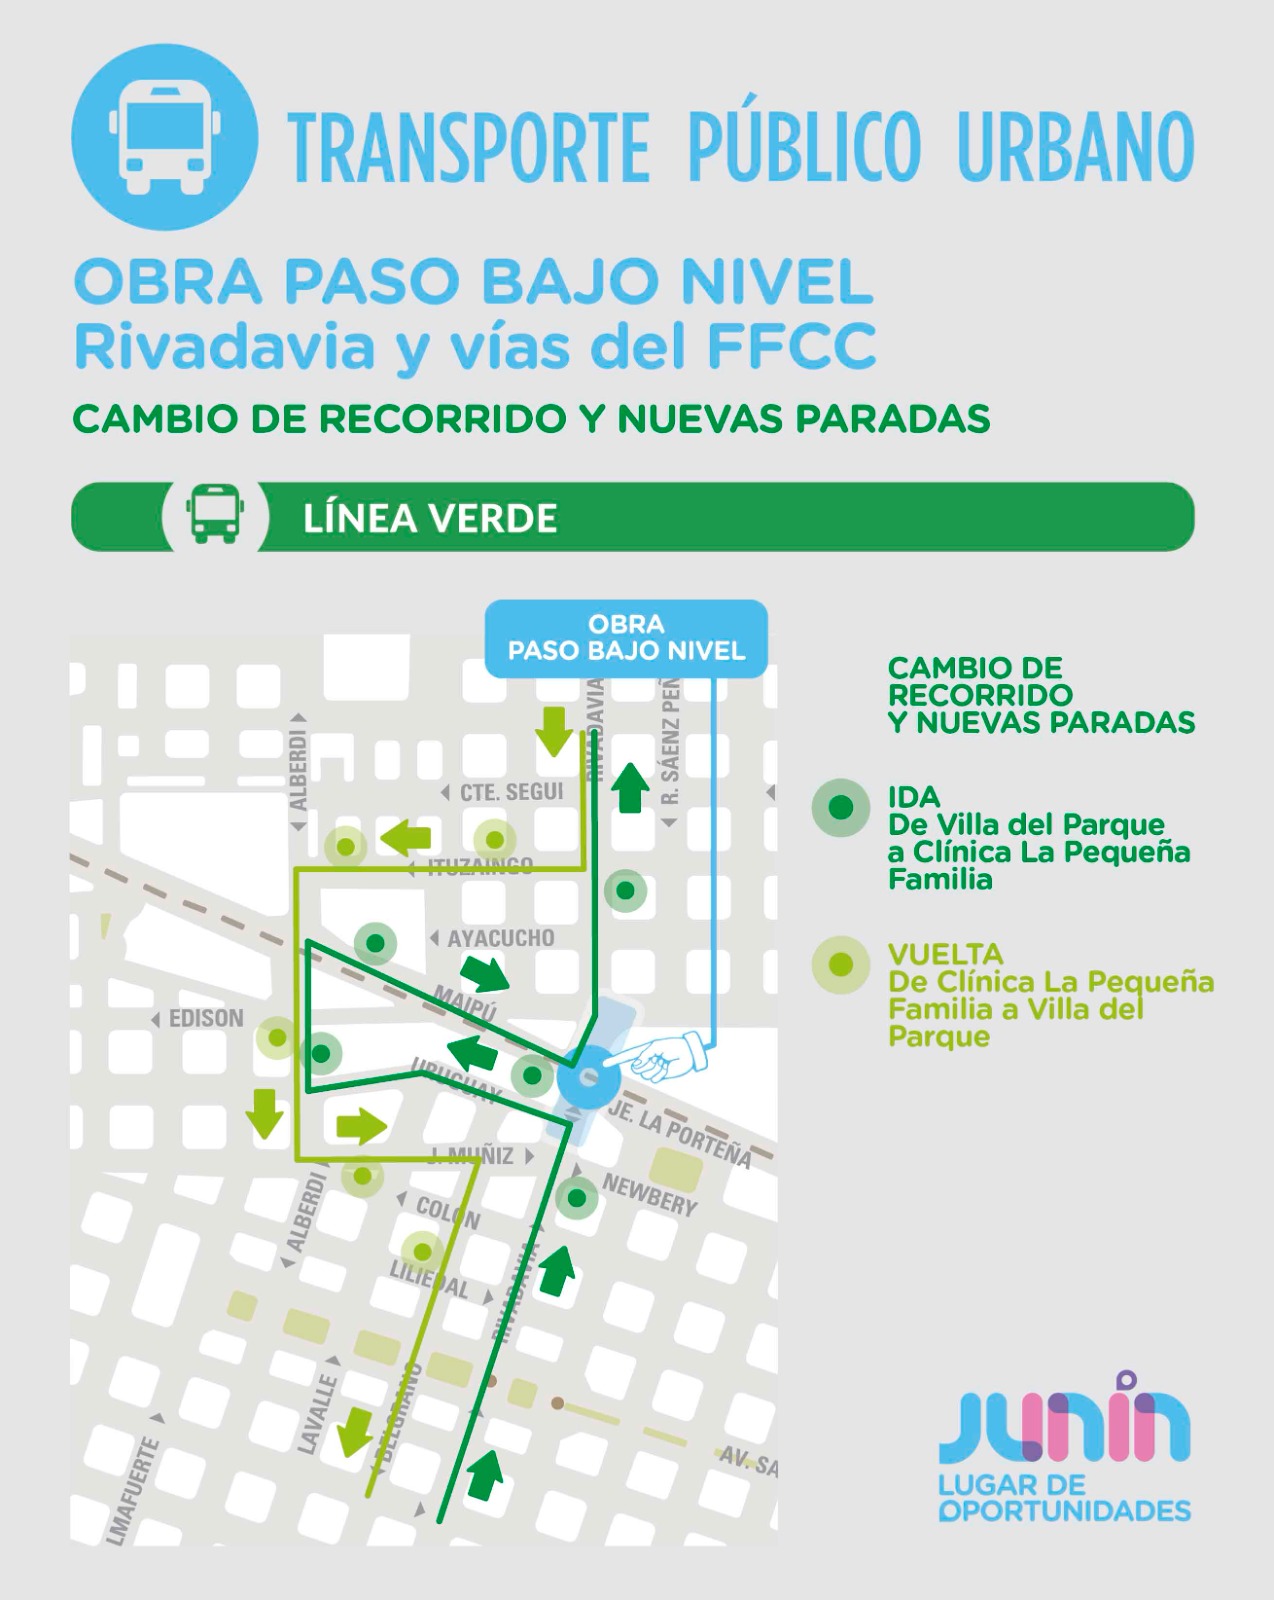 Obras del paso bajo nivel de calle Rivadavia: Cambios en el sentido de calles, semáforos y desvío en la línea verde del transporte público